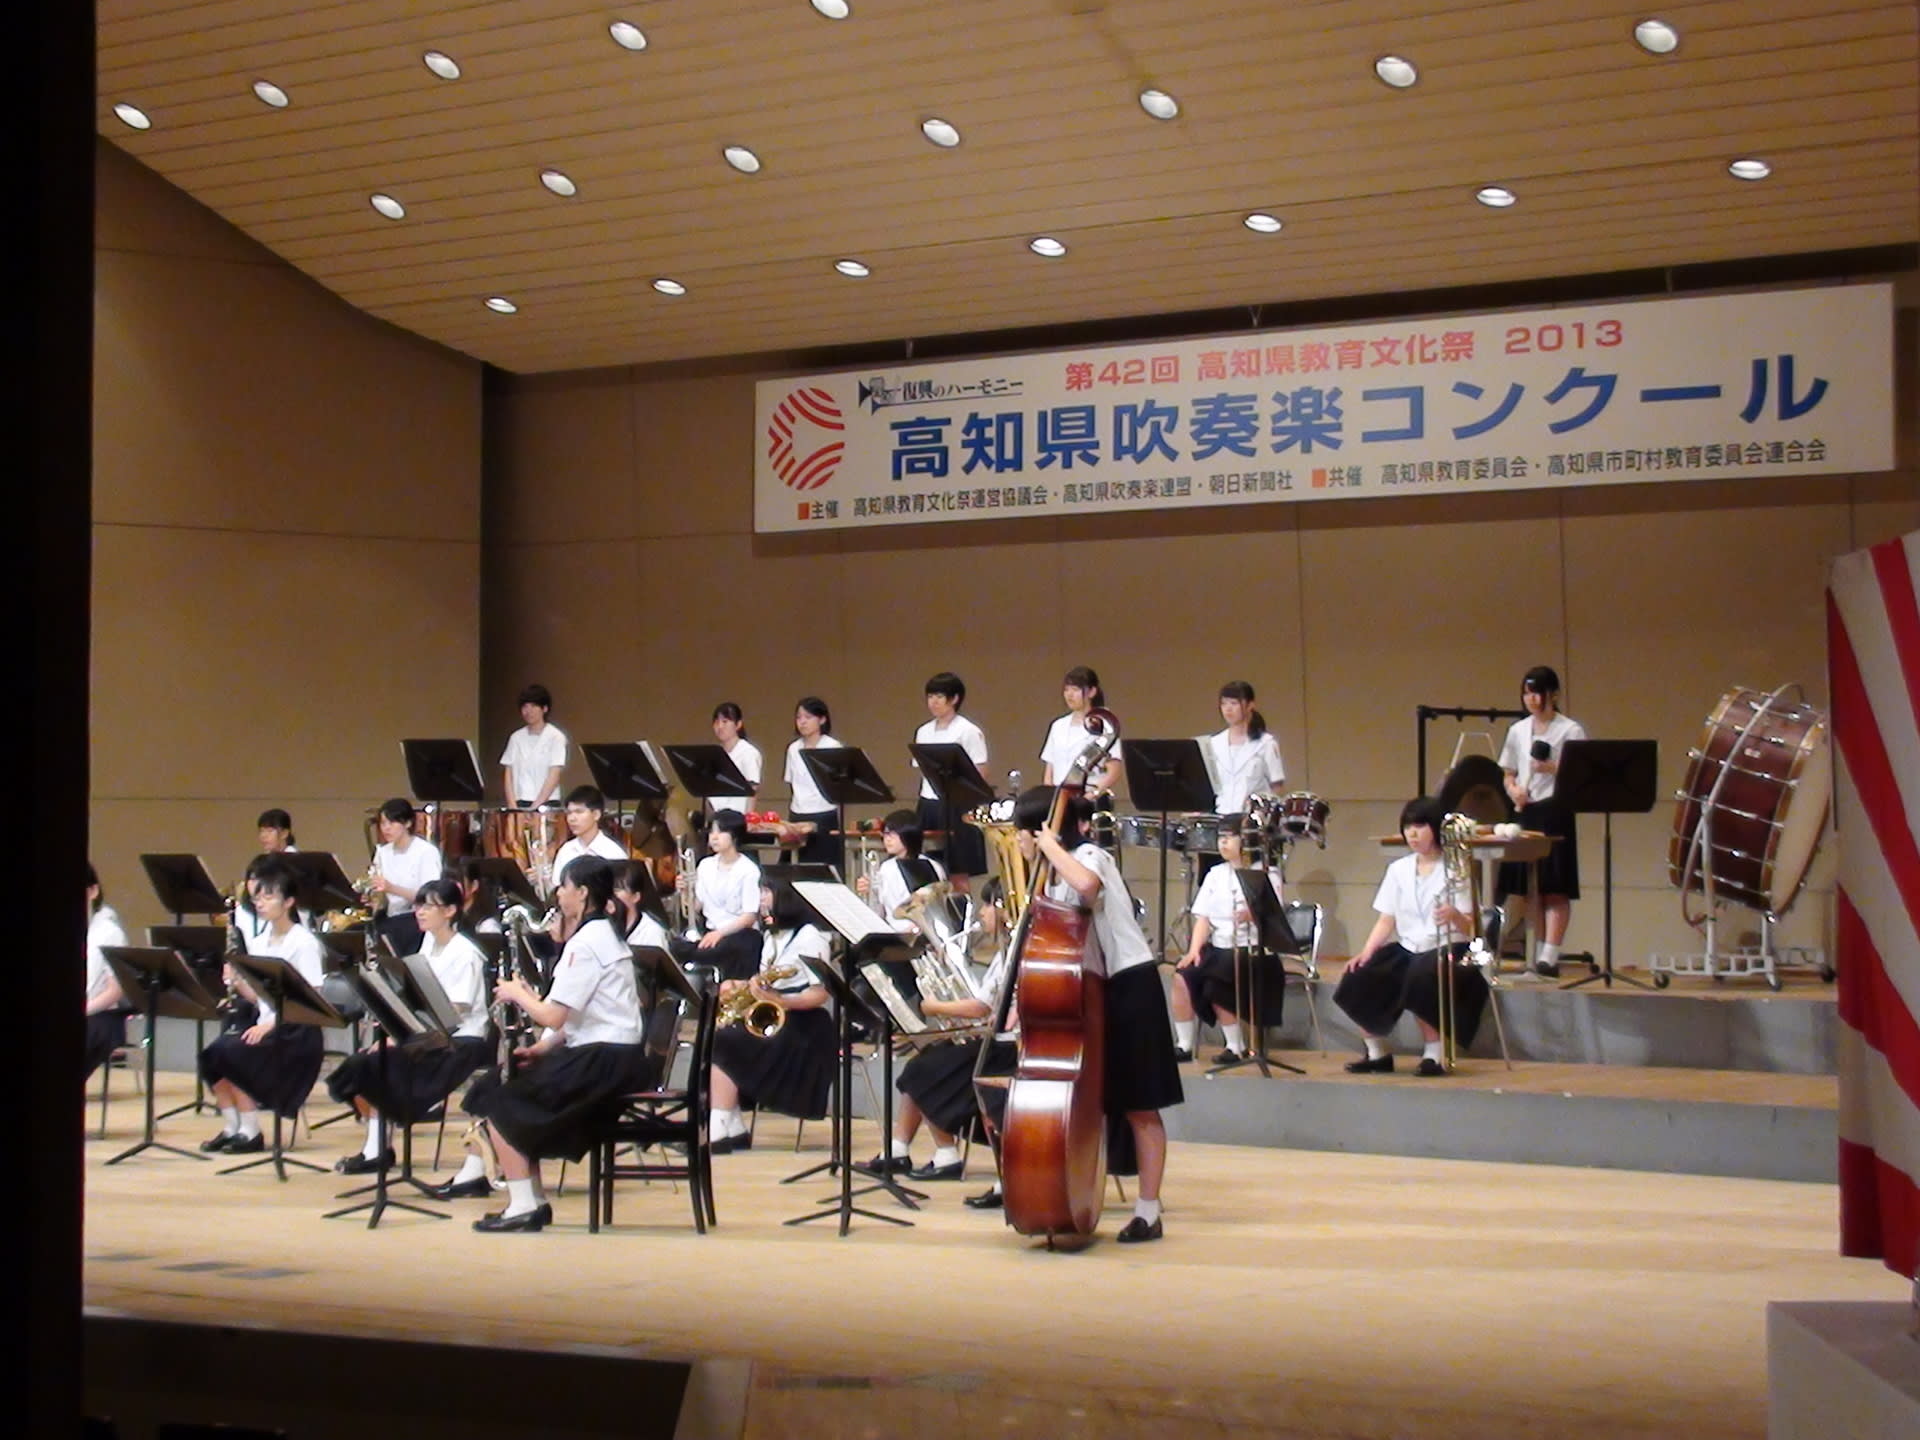 熱い思いをこの演奏でー高知県吹奏楽コンクールー 高知県教育文化祭 ー 光る感性 たたえよう 土佐の教育文化 ー